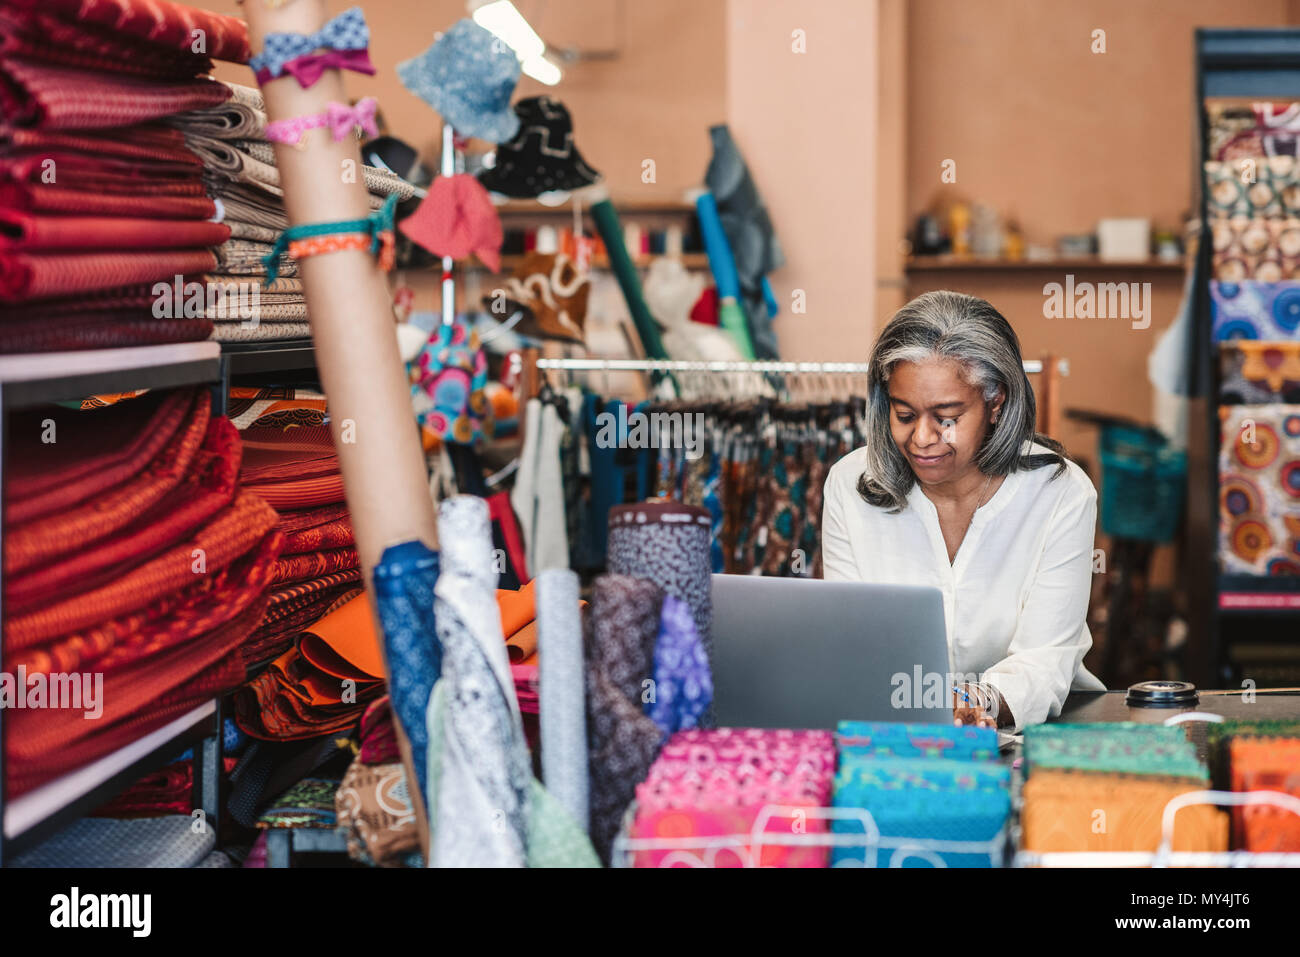 Lächelnd reife Stoff shop besitzer, der an einem Notebook arbeitet, während bei einem Zähler von bunten Tüchern und Textilien umgeben stehend Stockfoto